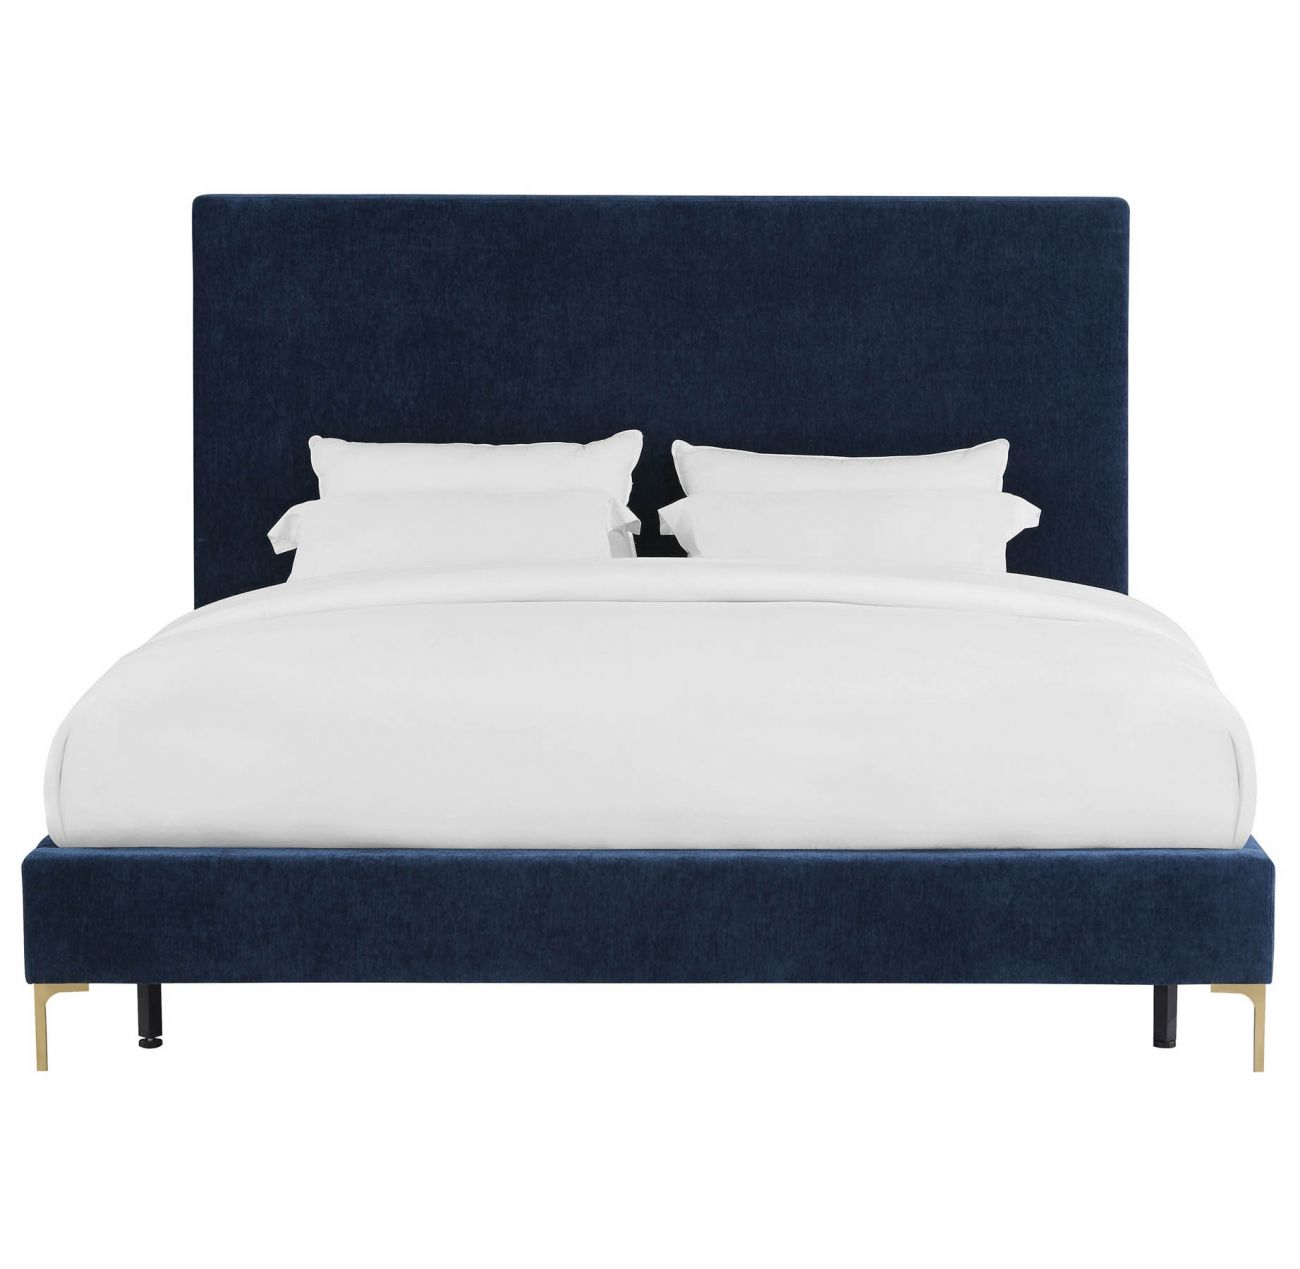 Кровать двуспальная 160х200 см синяя Mark